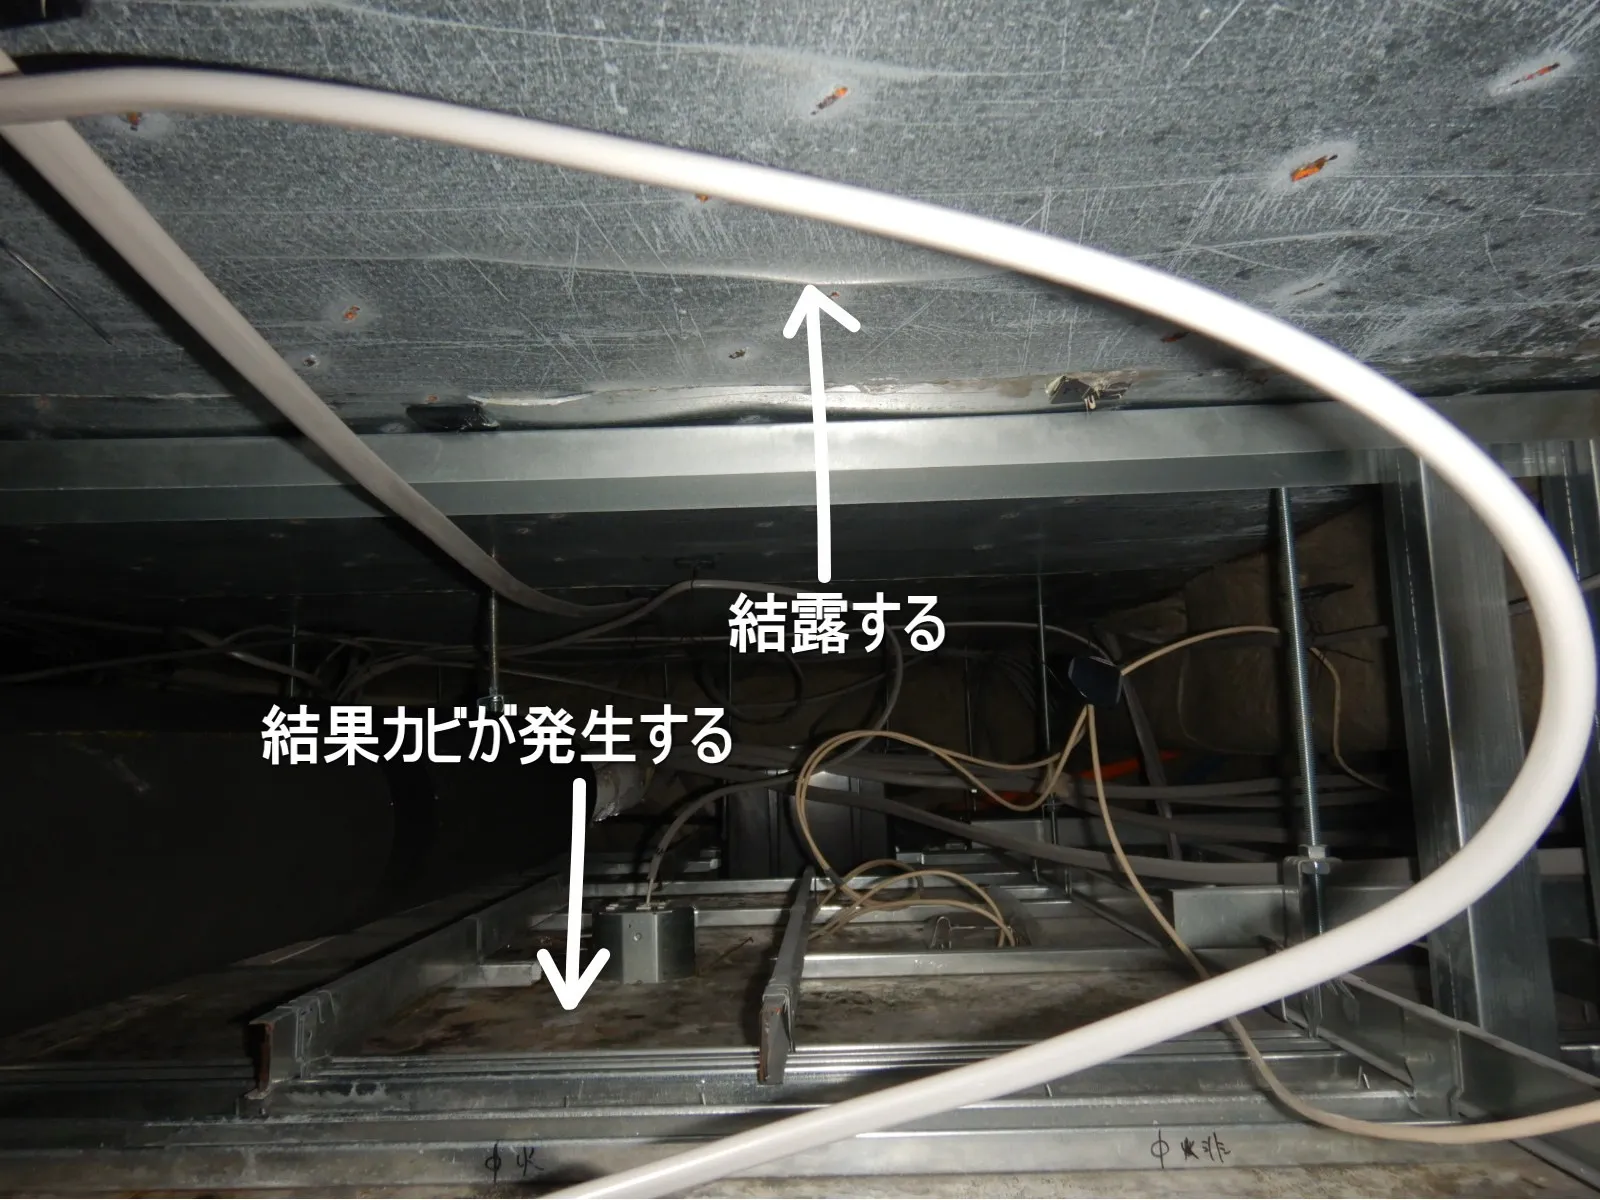 天カセエアコンの配管結露と天井カビ